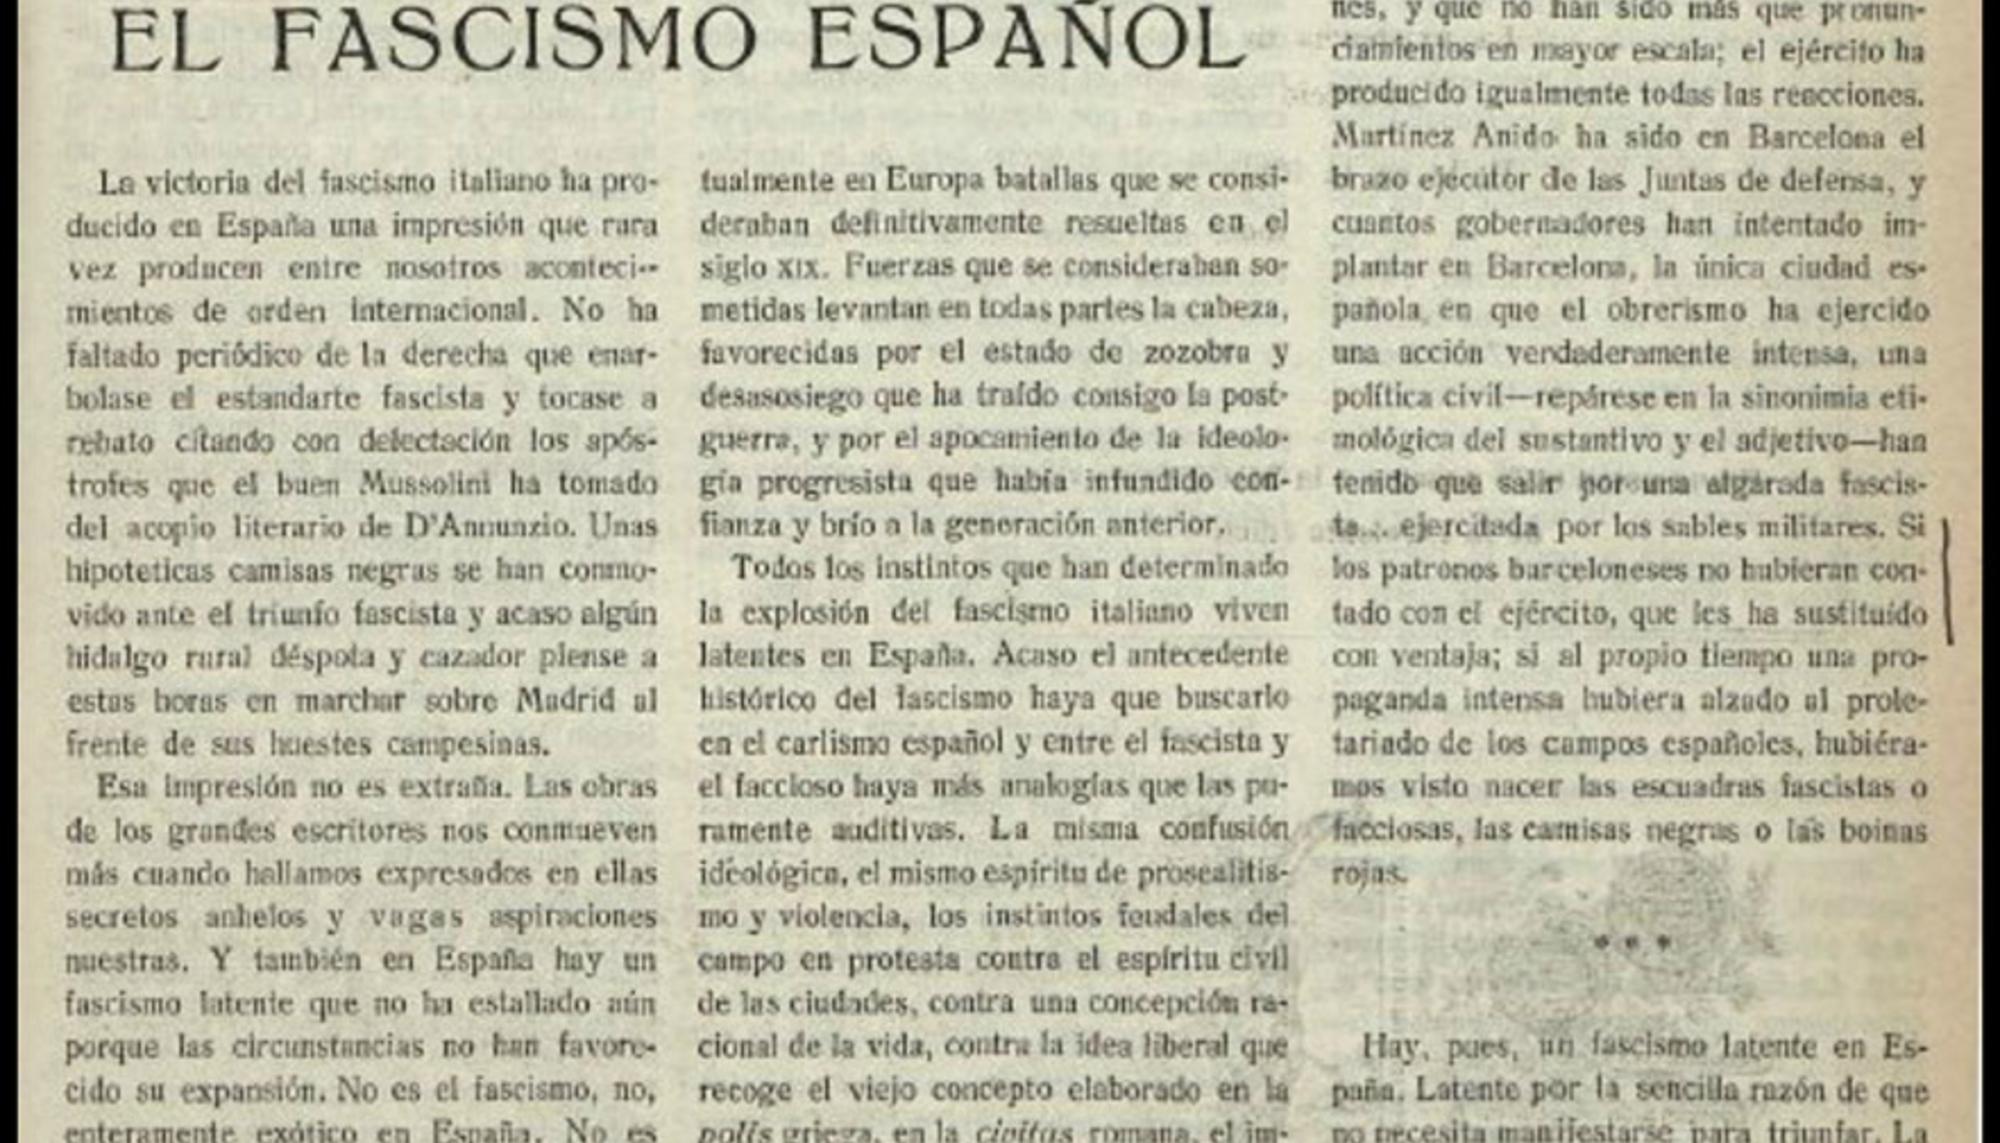 El editorial "El fascismo español" publicado por el semanario "España" el 4 de noviembre de 1922.